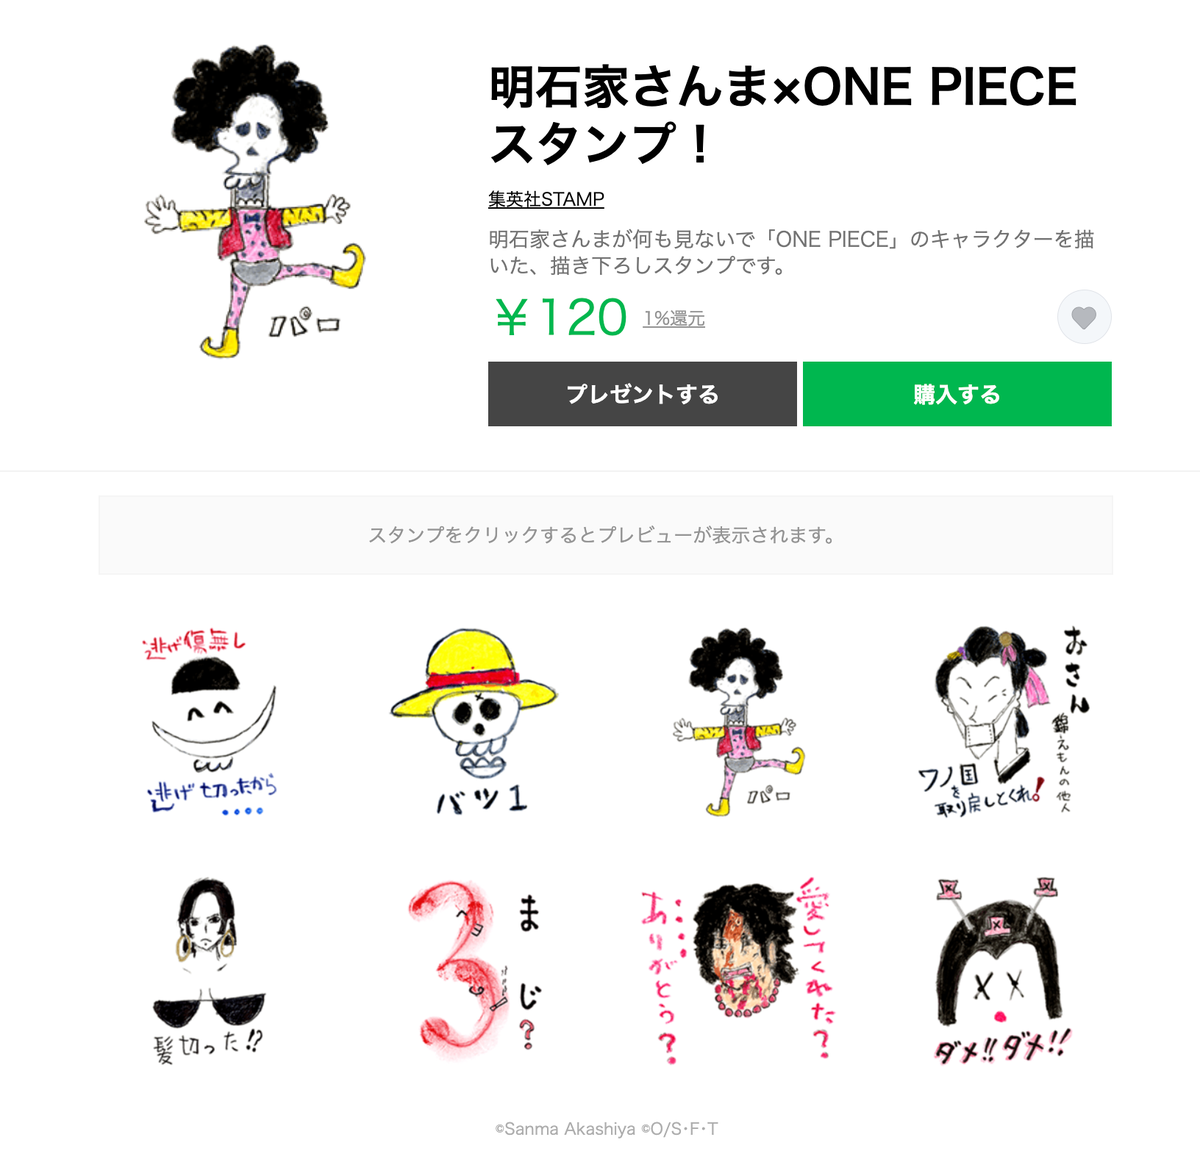 One Piece スタッフ 公式 Official Onepieceスタンプ 特報 明石家さんまさんのスタンプが発売 何も見ずにイメージとネタをミックスアップした8点 ぜひ御覧ください パー 購入ページ T Co Qdmry3yjbl ワンピの日 Onepieceの